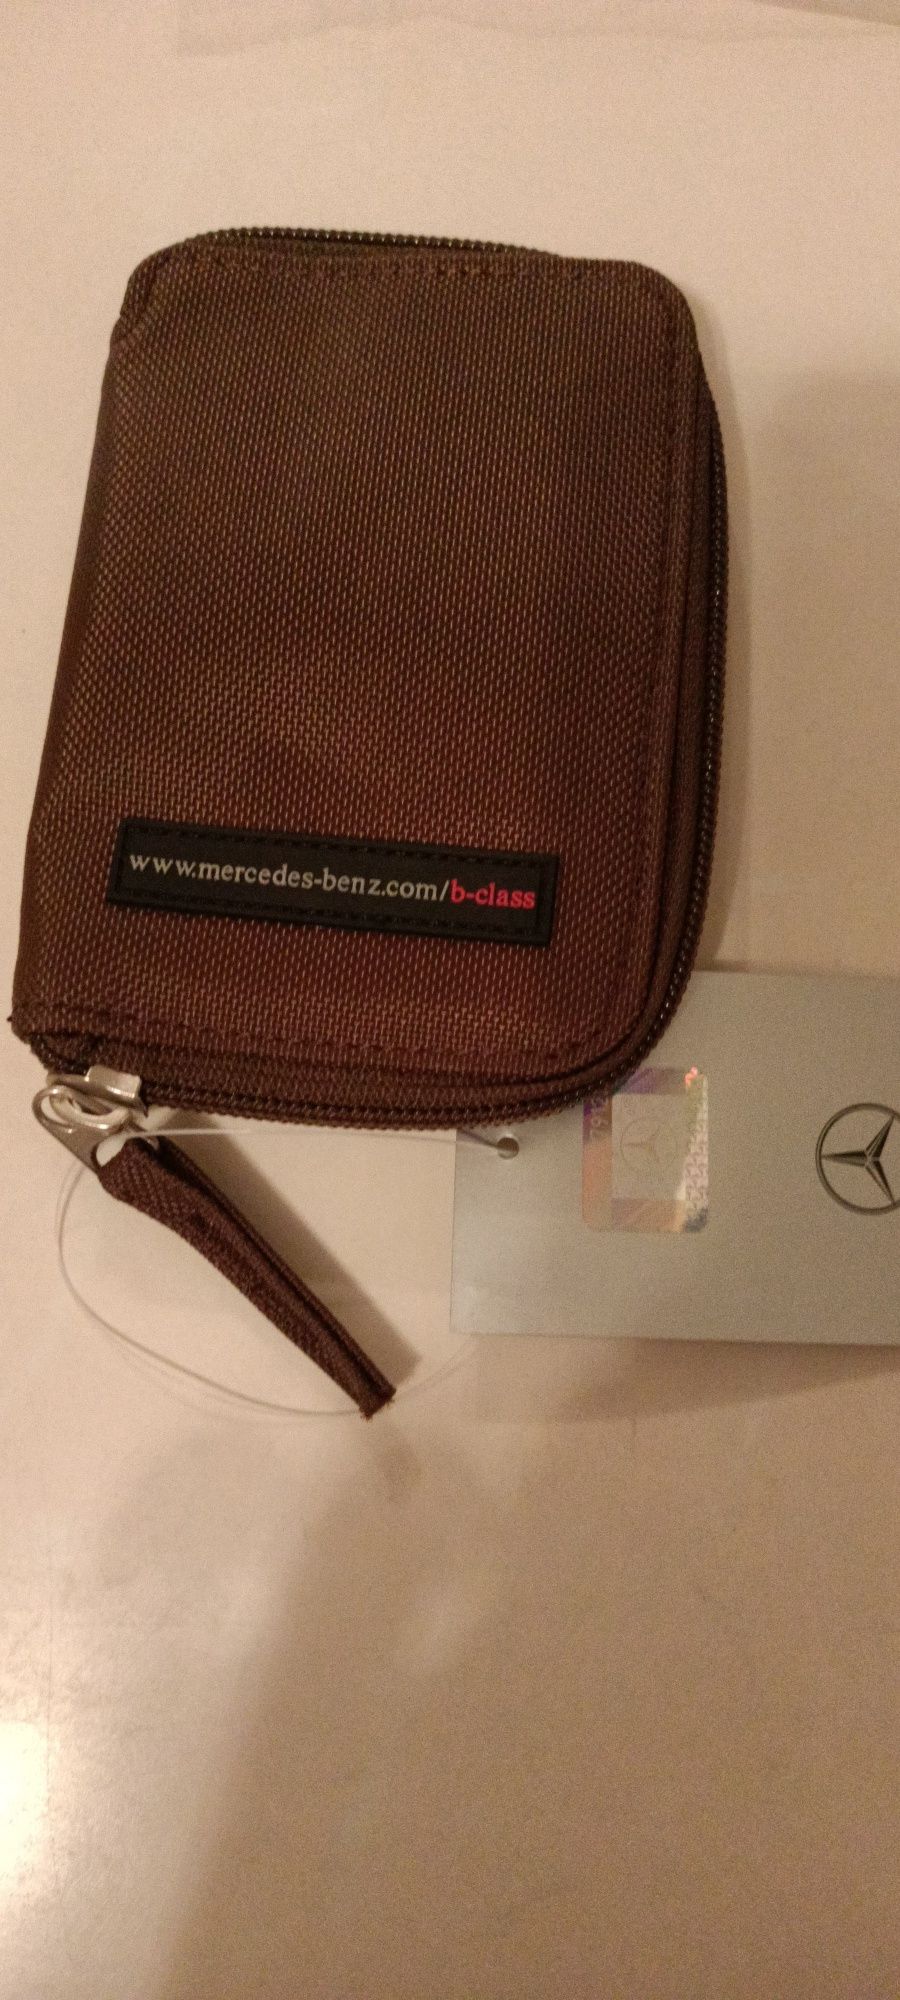 Oryginalny nowy portfel, etui na klucze Mercedes Benz